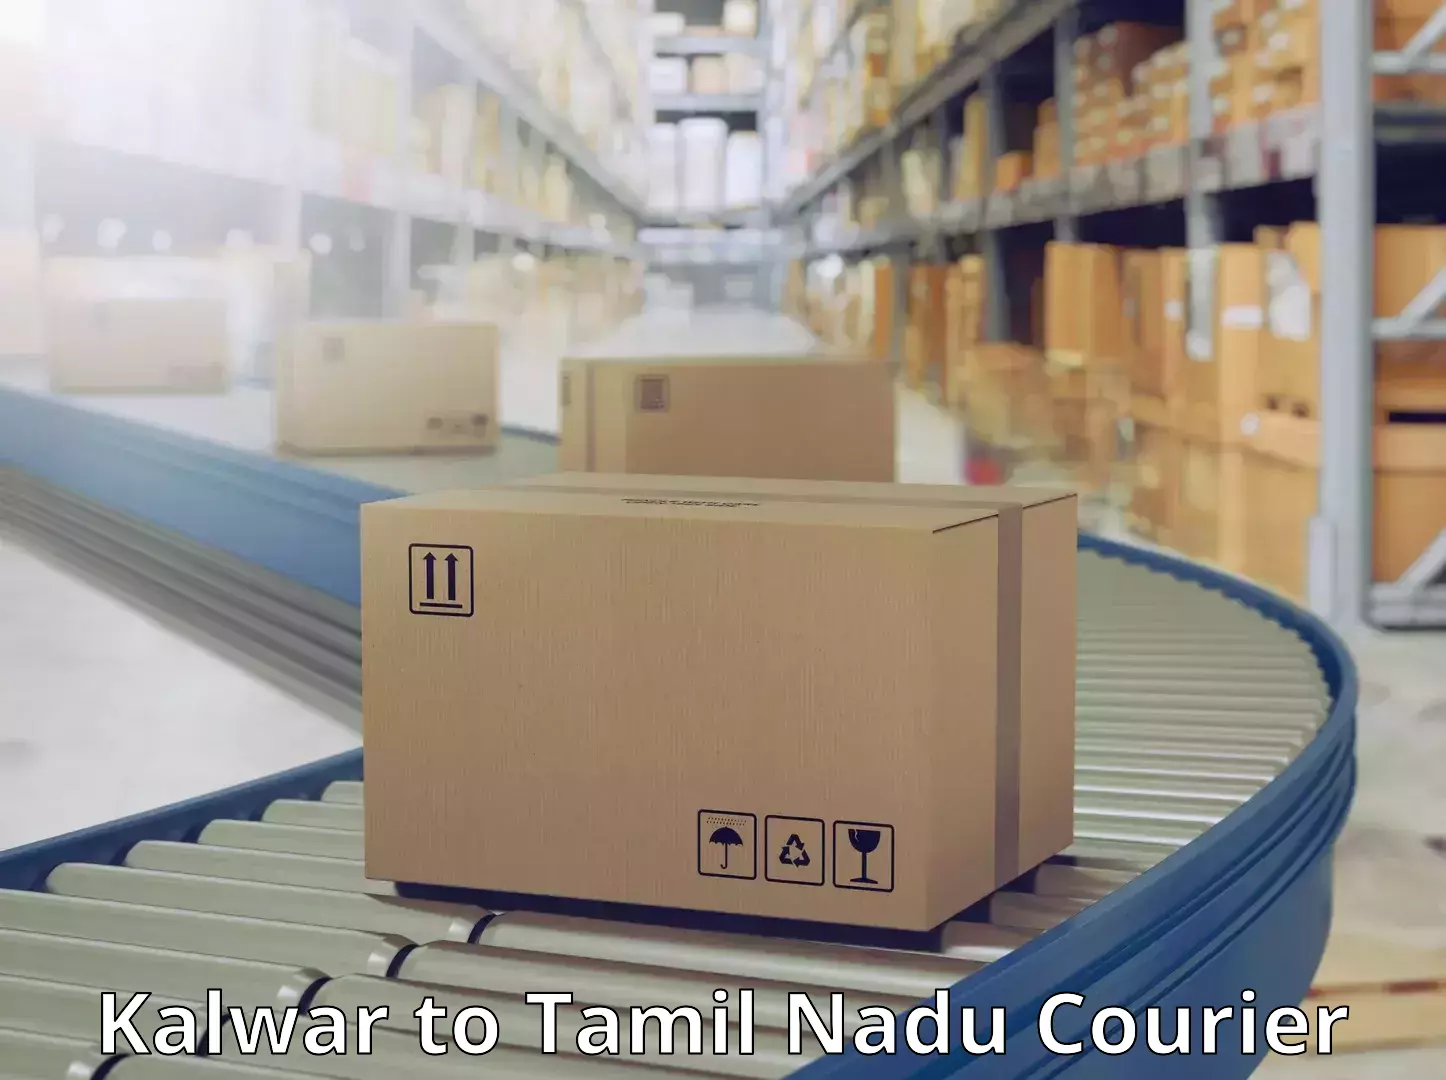 Global courier networks Kalwar to Tamil Nadu